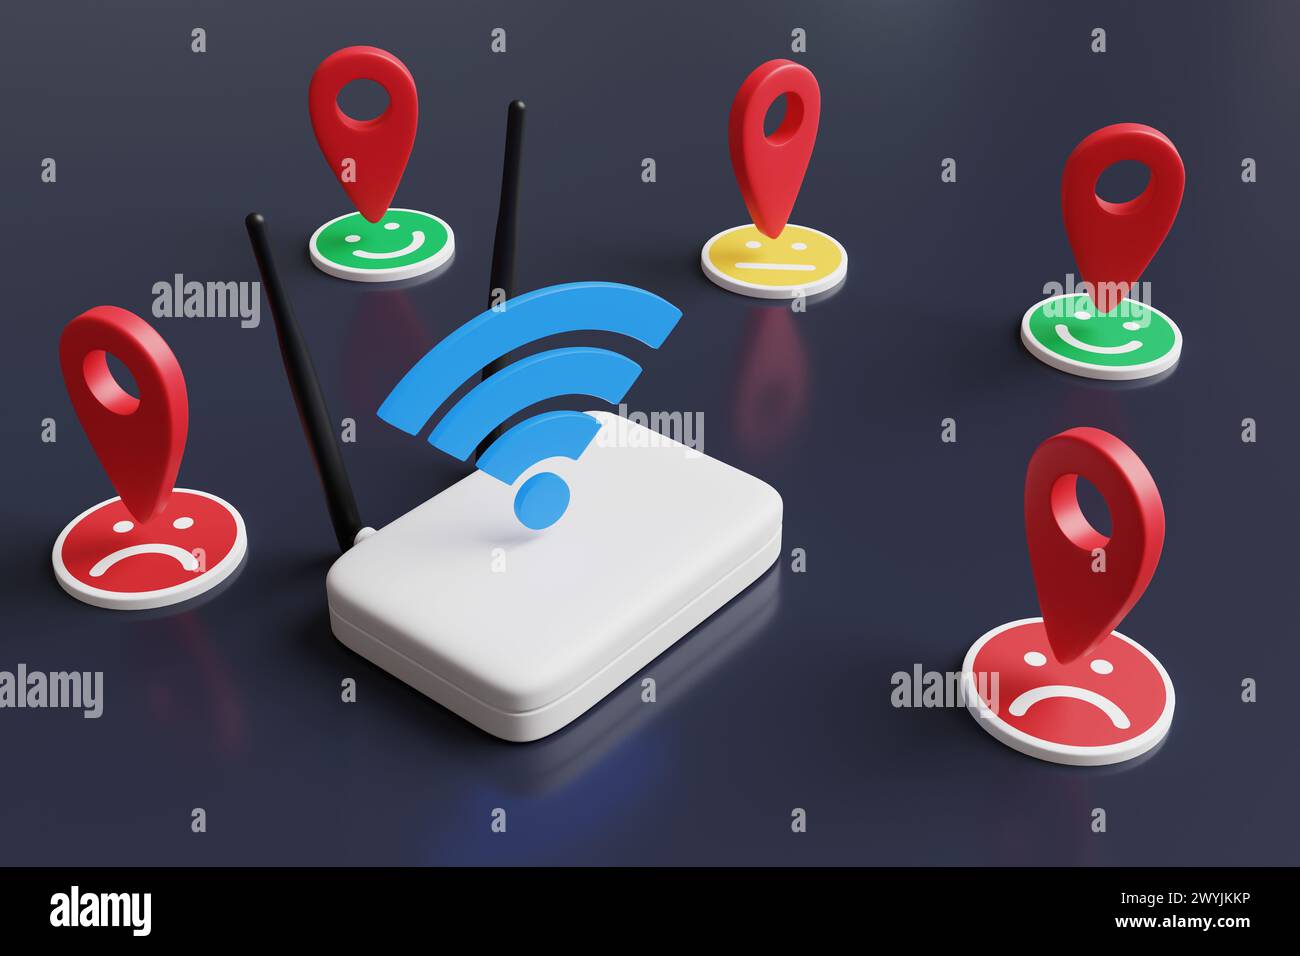 Routeur Wifi blanc avec antennes noires entourées de symboles de géolocalisation rouges ayant différentes expressions faciales. Réception du signal WiFi local instable Banque D'Images